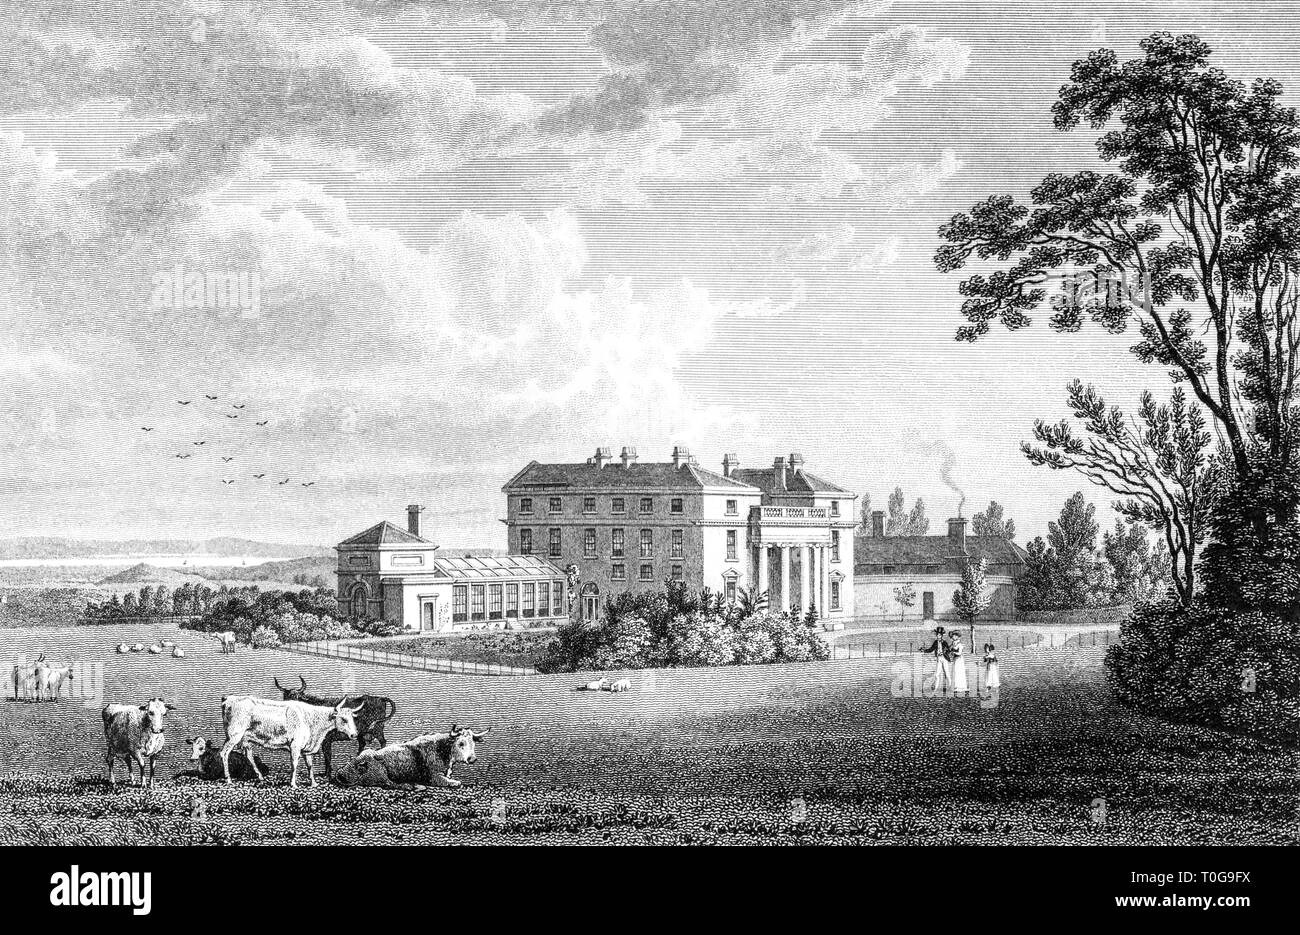 Une gravure de la crête, le siège d'Edward Sheppard, Wotton under Edge, Gloucestershire UK numérisées à haute résolution à partir d'un livre publié en 1825 Banque D'Images